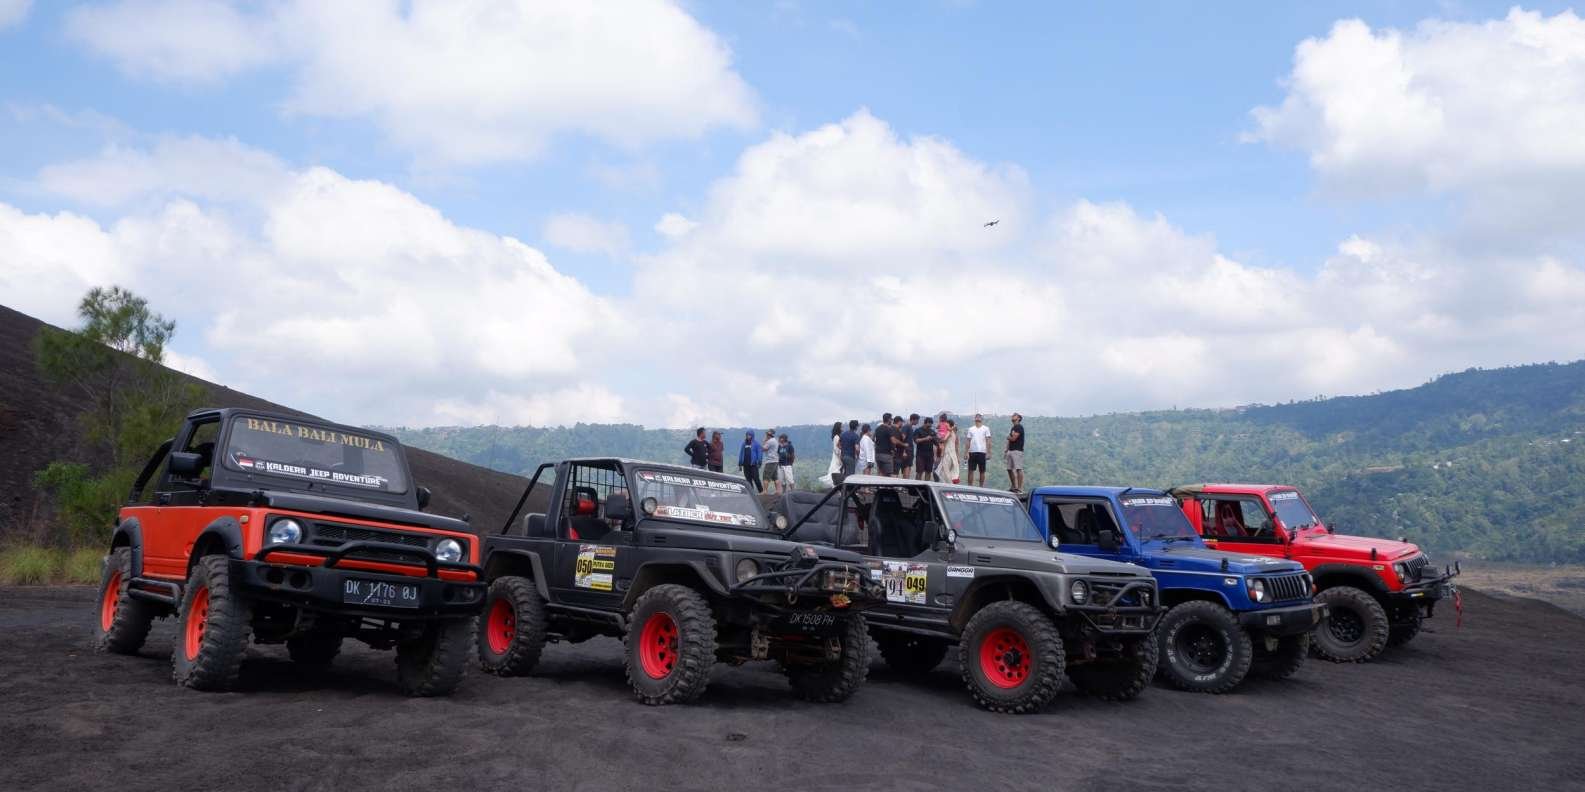 019-mt-batur-black-lava-jeep-tour-natural-hot-spring-8-t175089.jpg